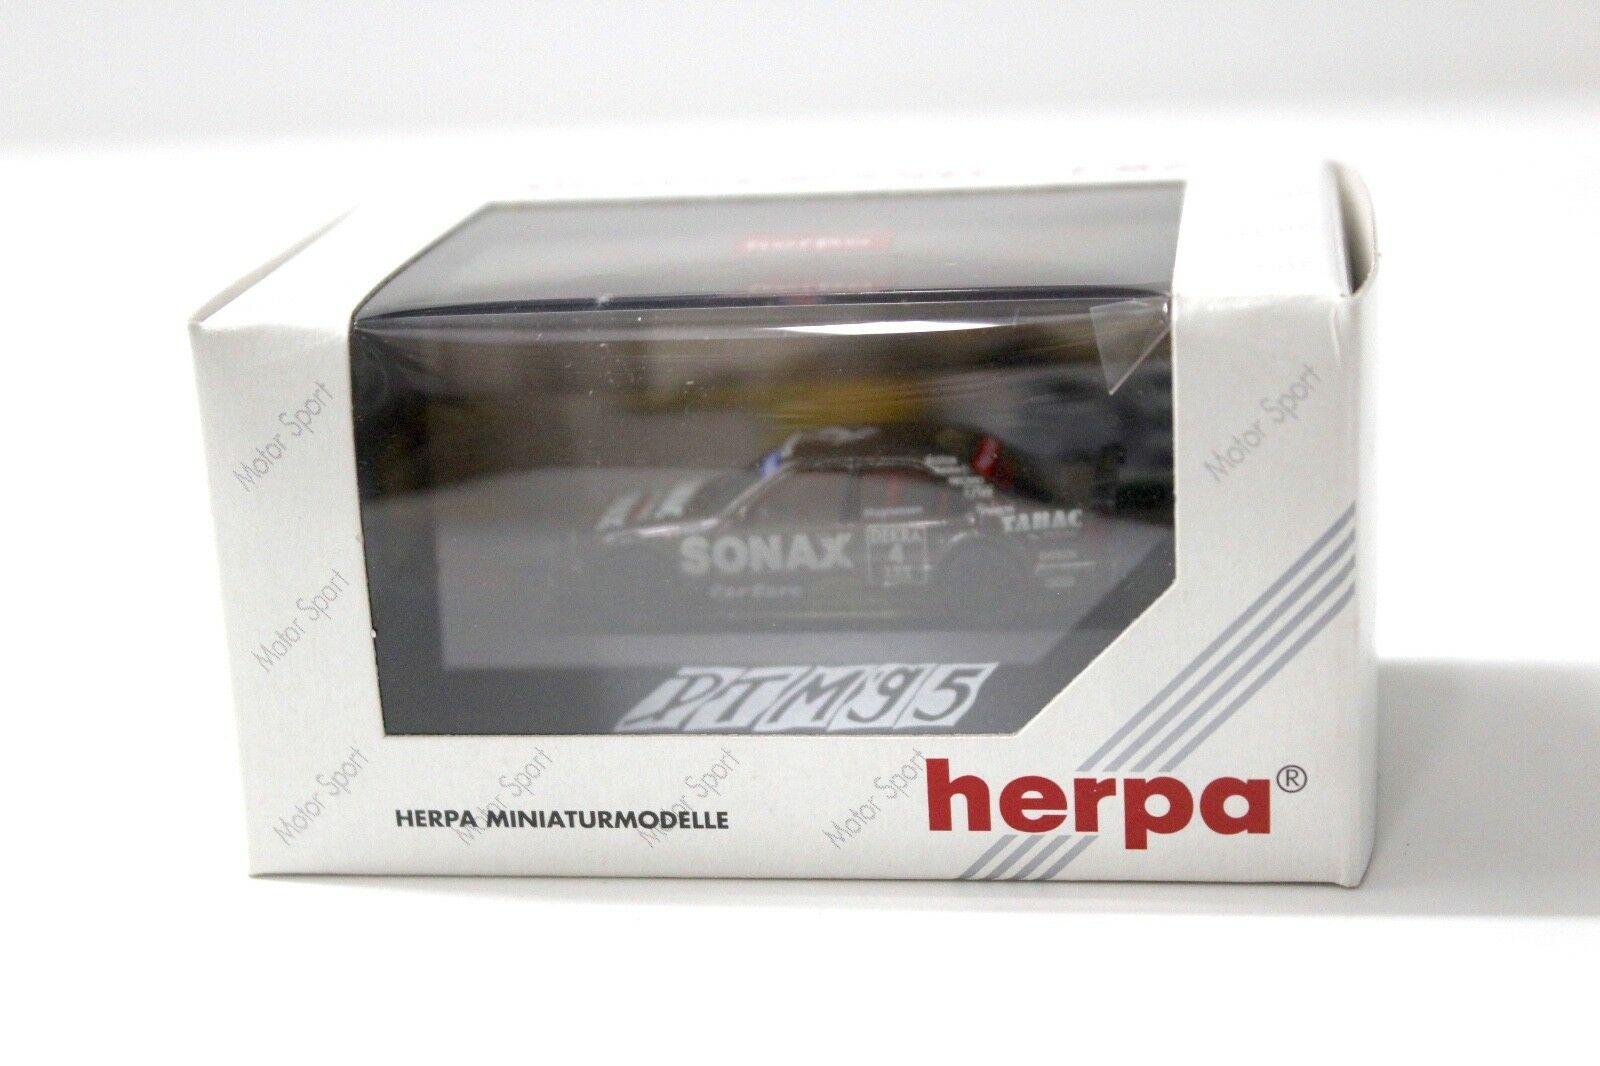 1:87 Herpa AMG Mercedes C180 "AMG-TEAM" SONAX #4 Magnussen